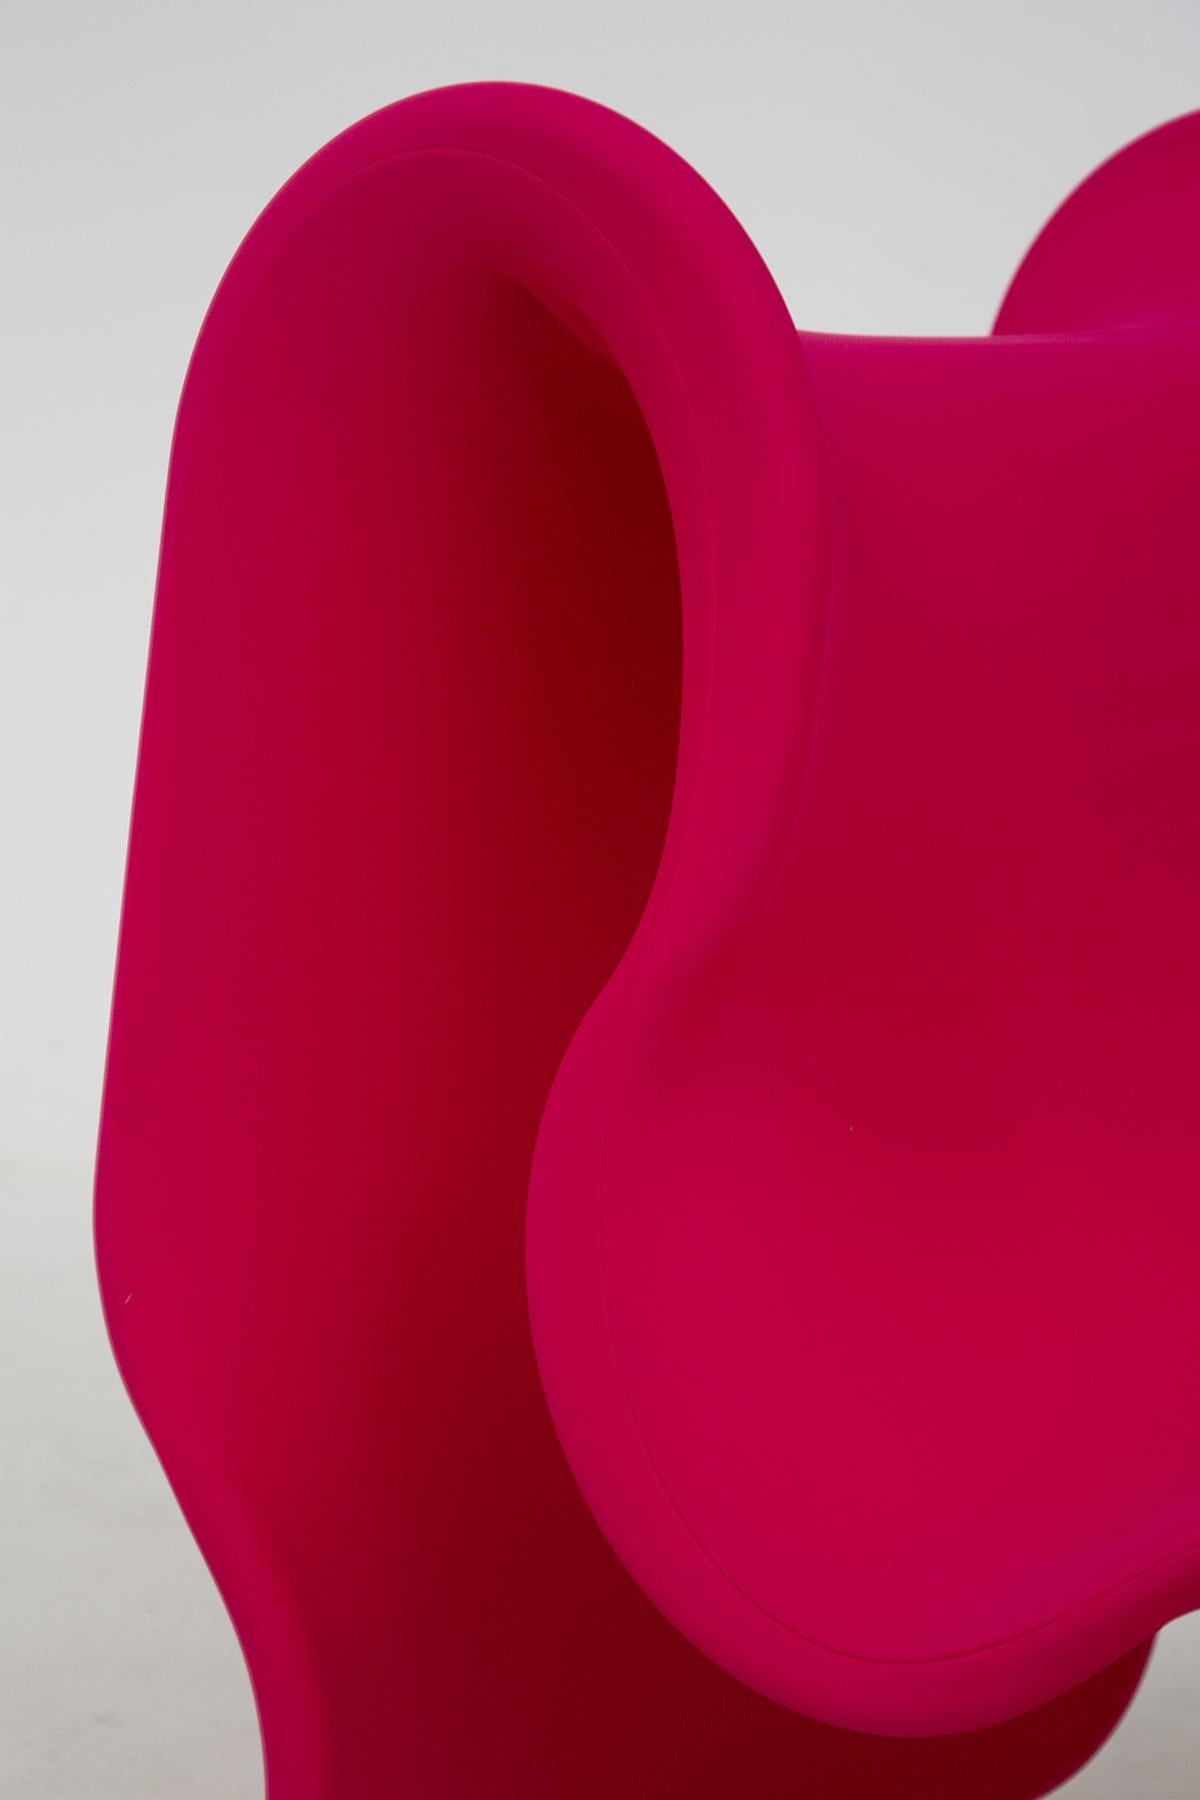 Schöner Sessel Fiocco hergestellt von Busnelli, geboren 1970 nach dem Entwurf von Gianni Pareschi.
Es bringt in das Wohnzimmer die gleiche Lebendigkeit und den gleichen Schwung wie ein farbiges Band, das auf dem Papier aufgewickelt ist, das das